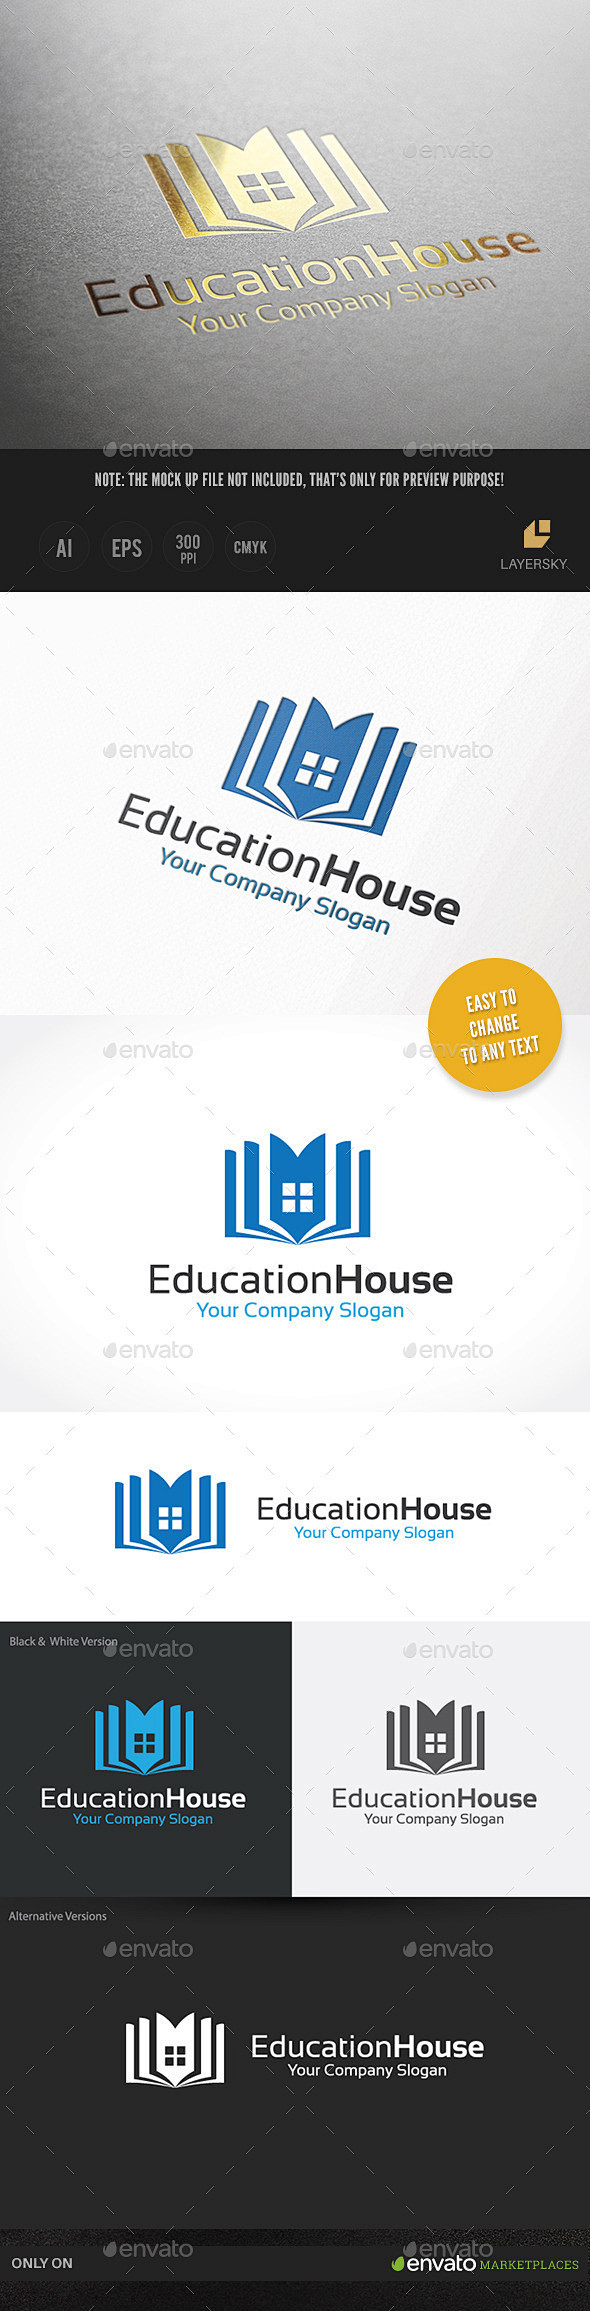 教育的房子——建筑标志模板Educati...